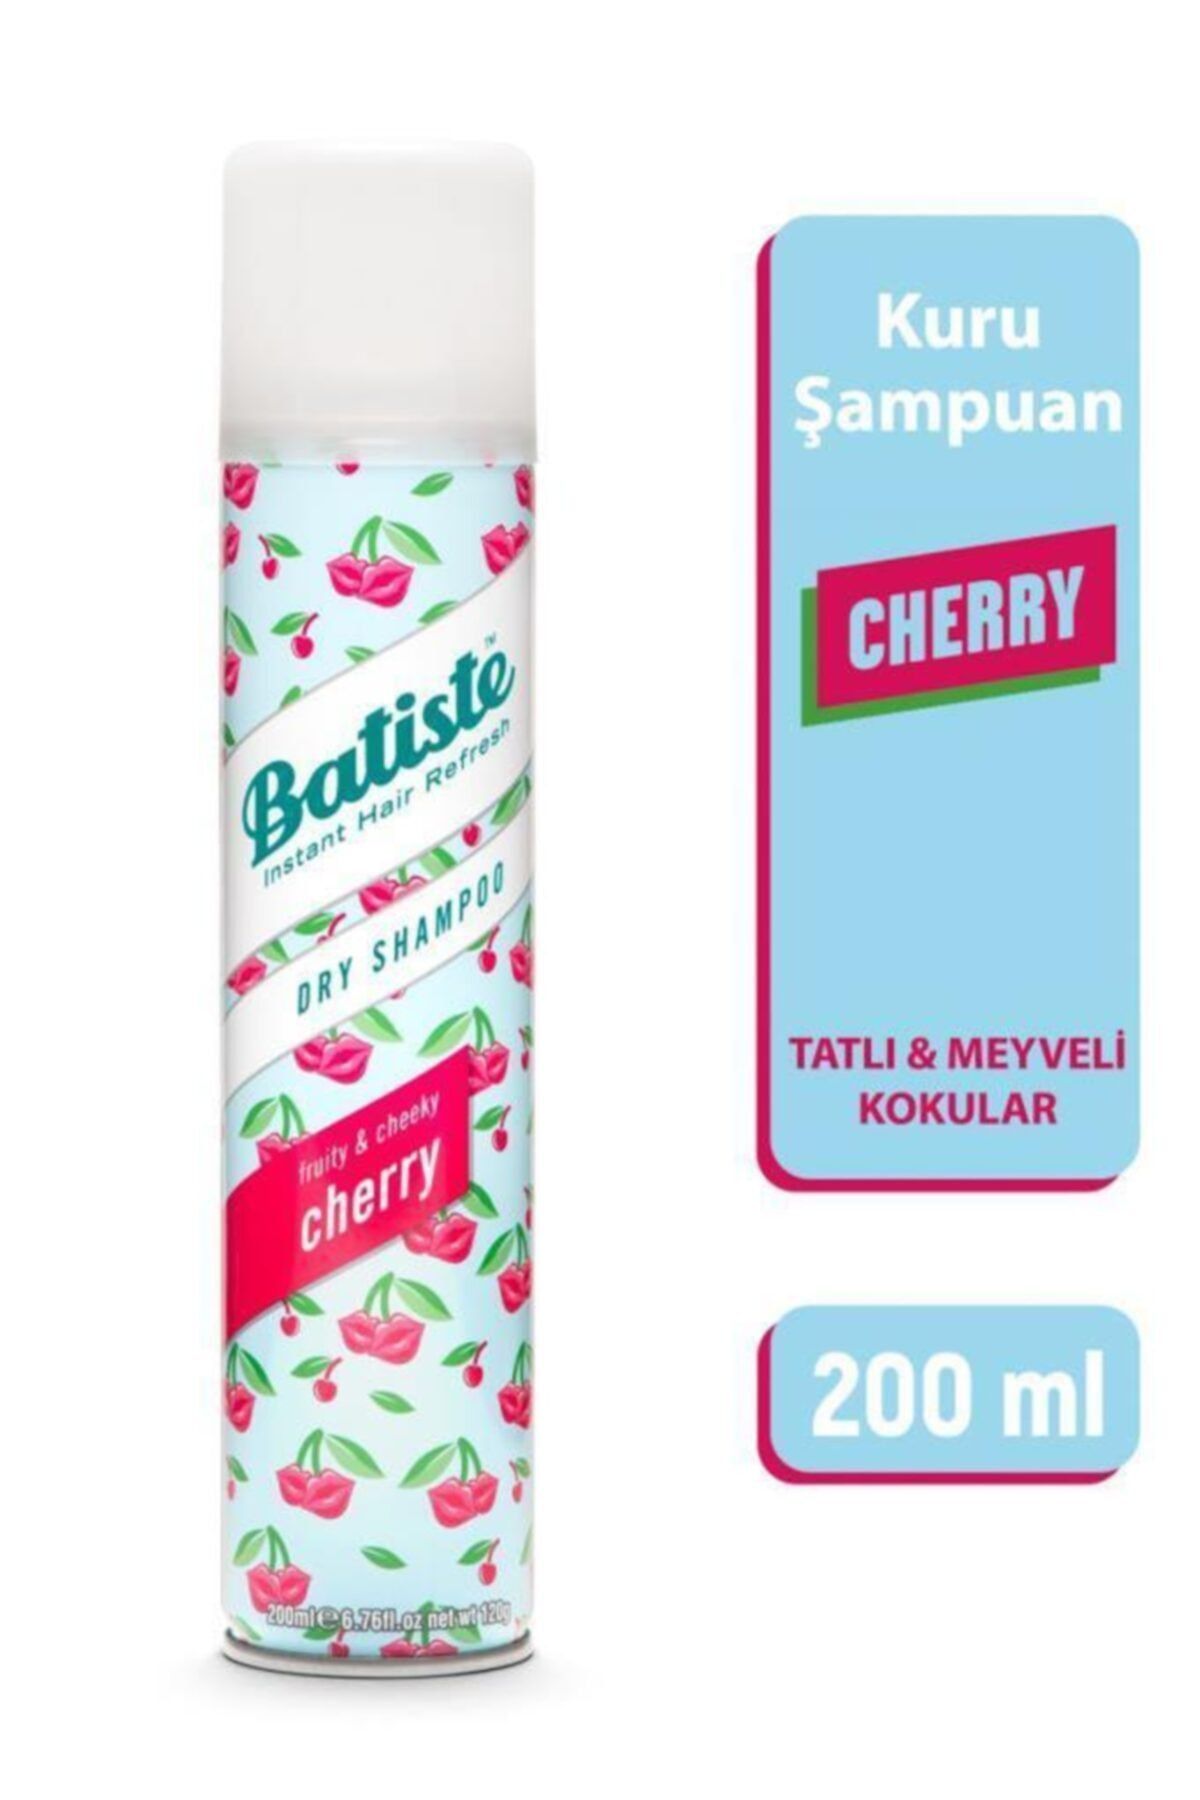 Batiste Dry Shampoo Kuru Şampuan Cherry 200 ml